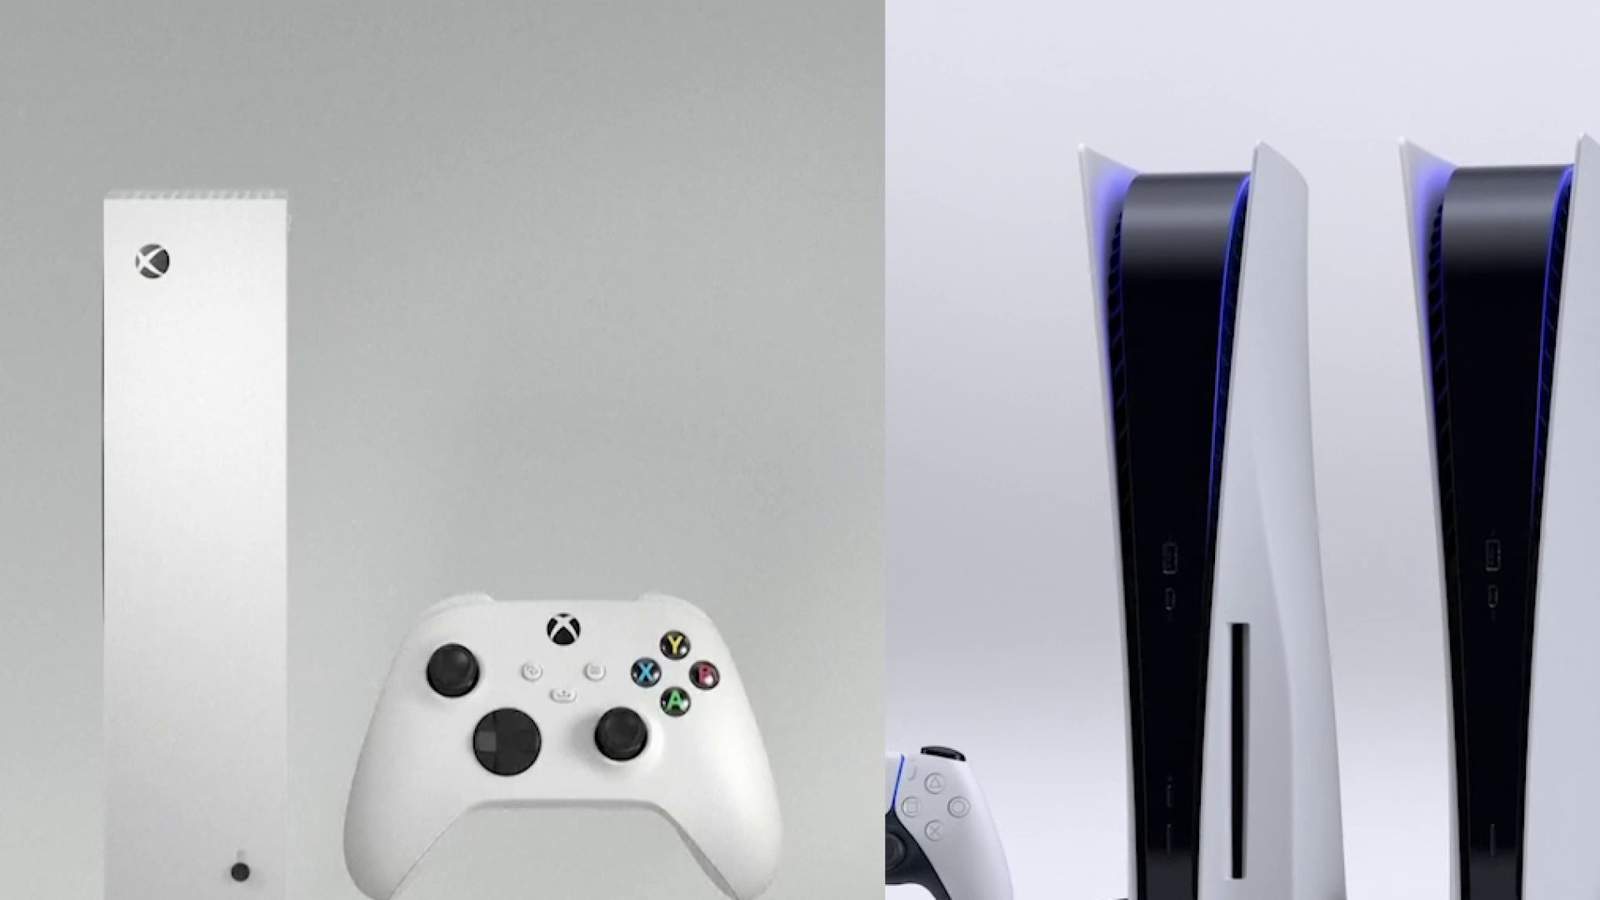 Console Wars 2020: PS5 vs Xbox Series X